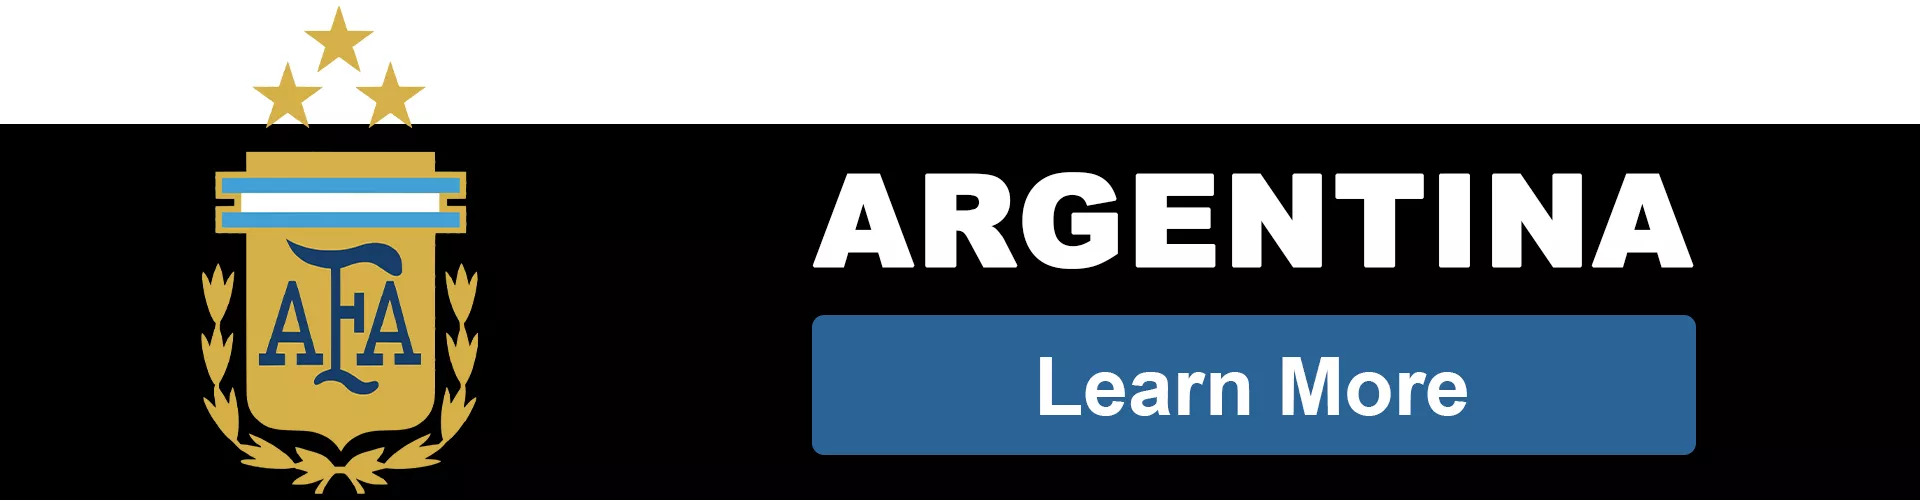 ARGENTINA TEAM - bestsoccerstore